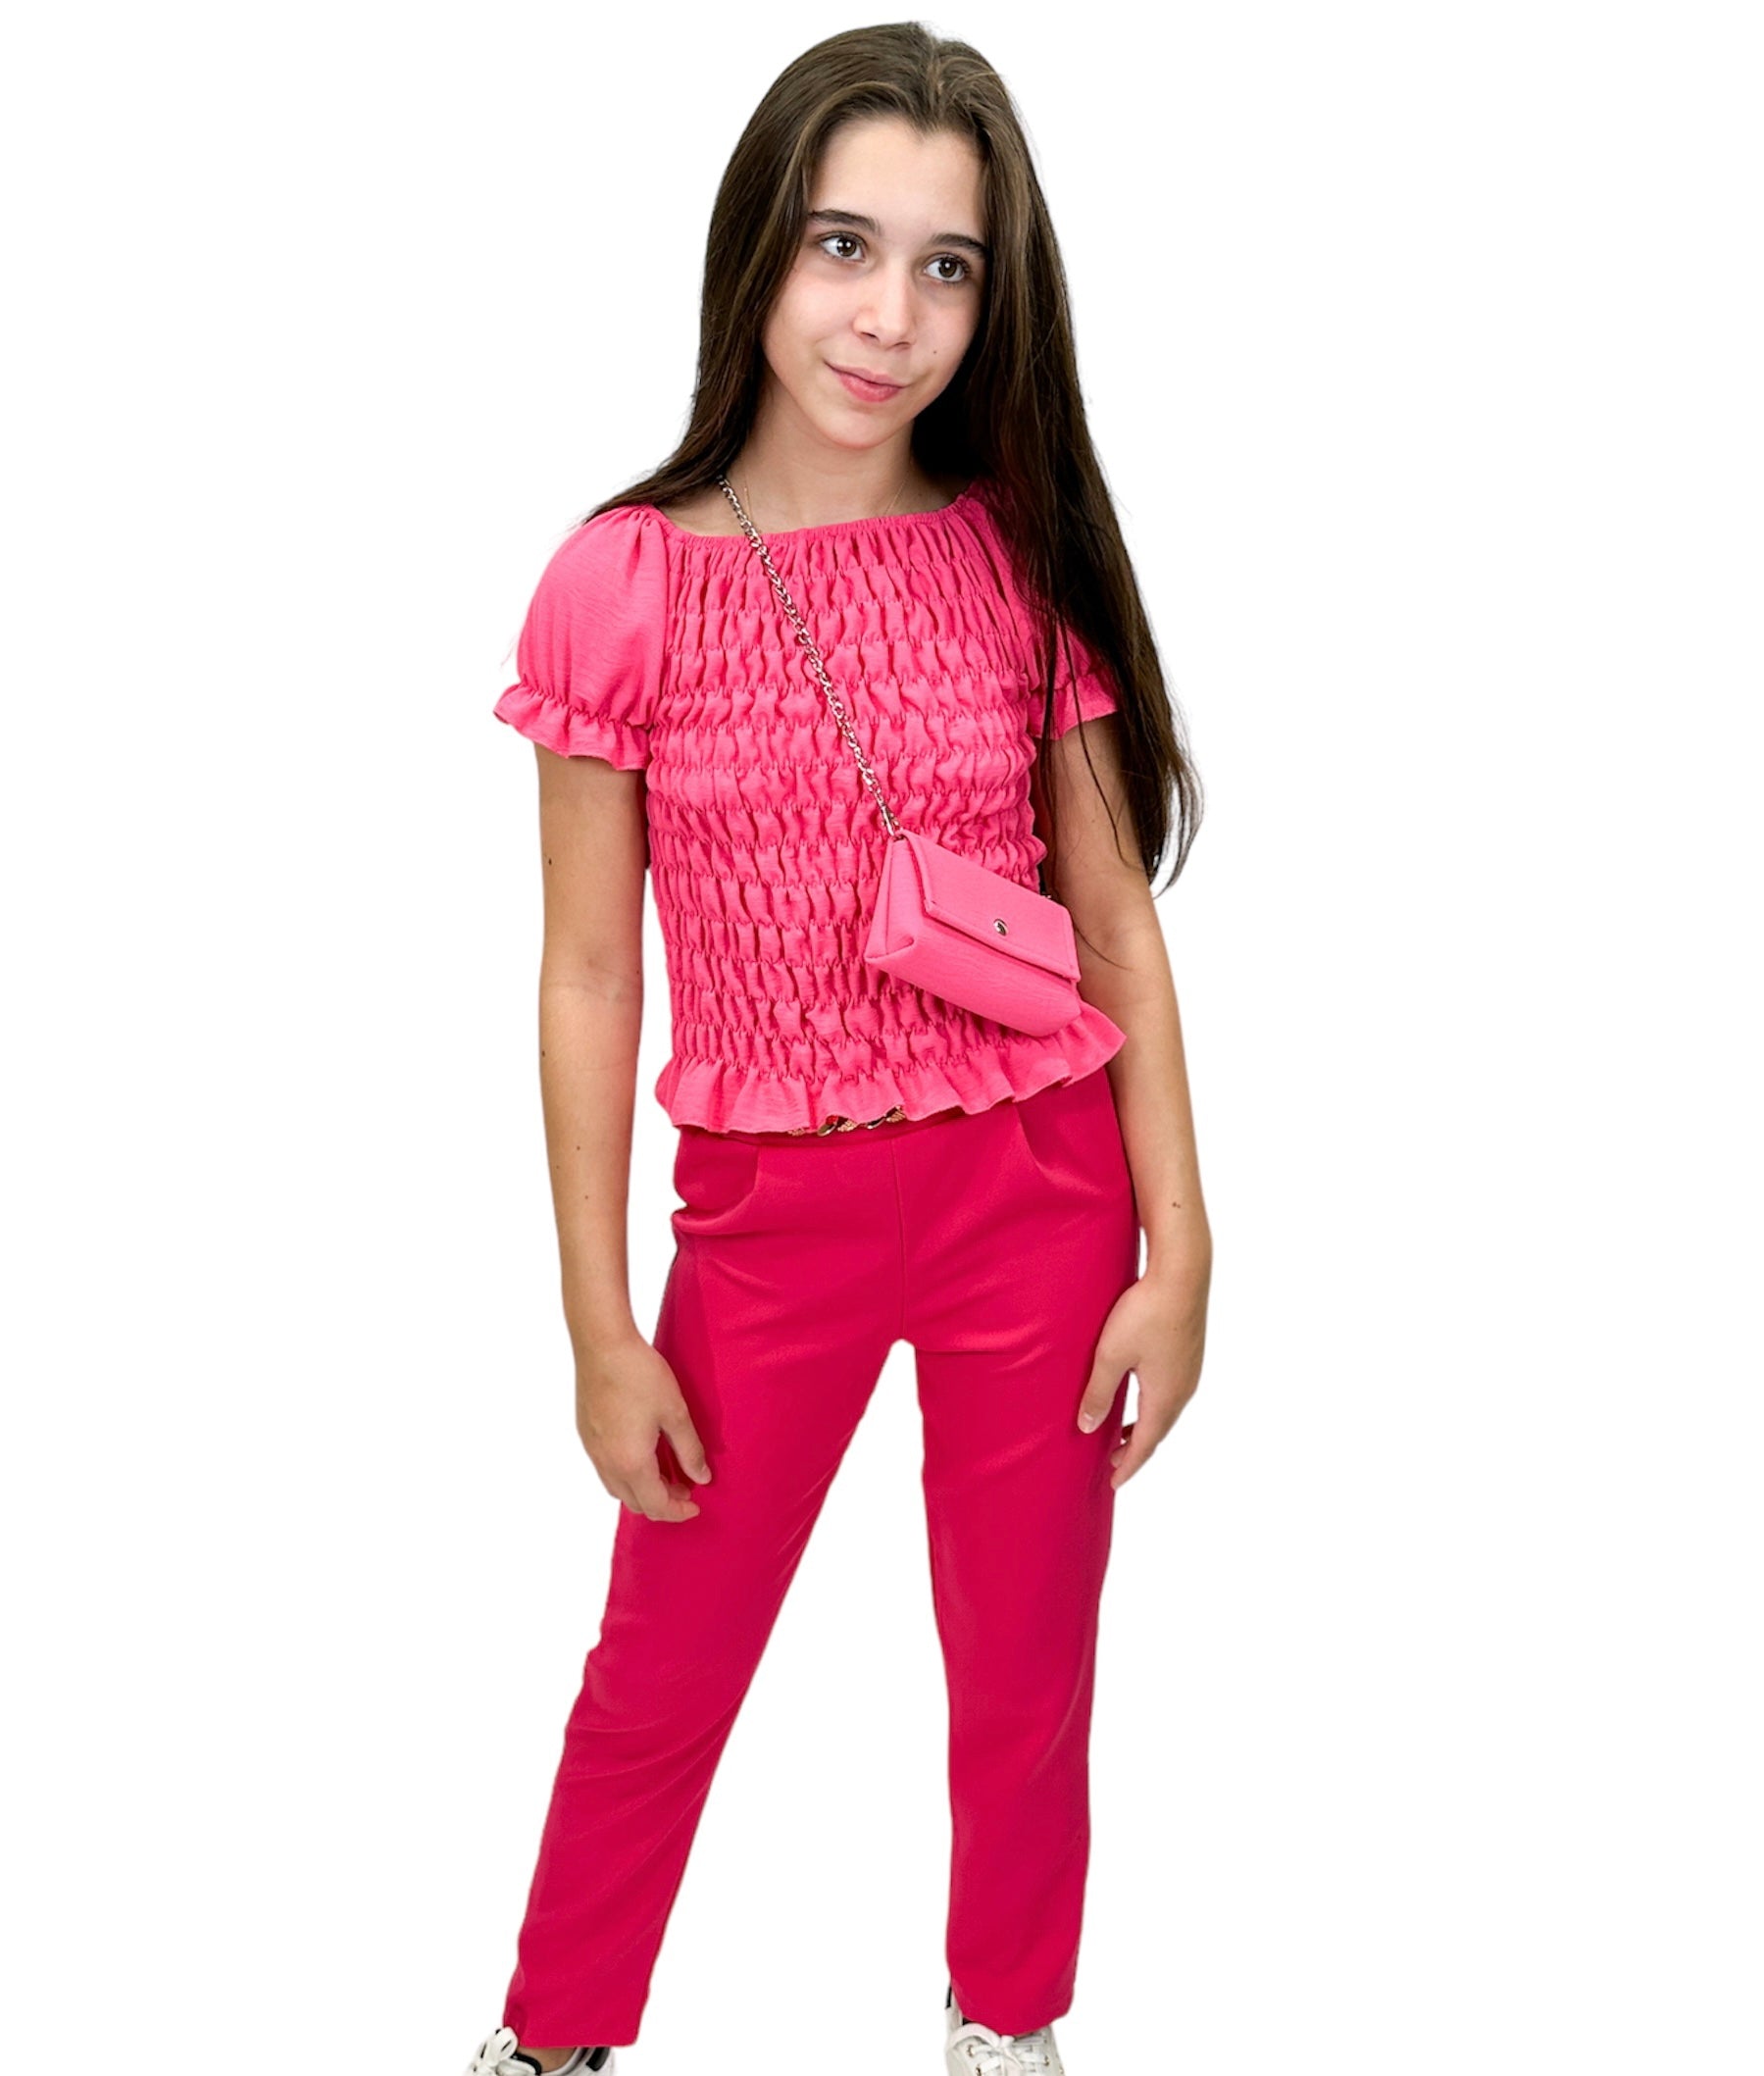 Compleu fetițe roz cu pantaloni și bluză